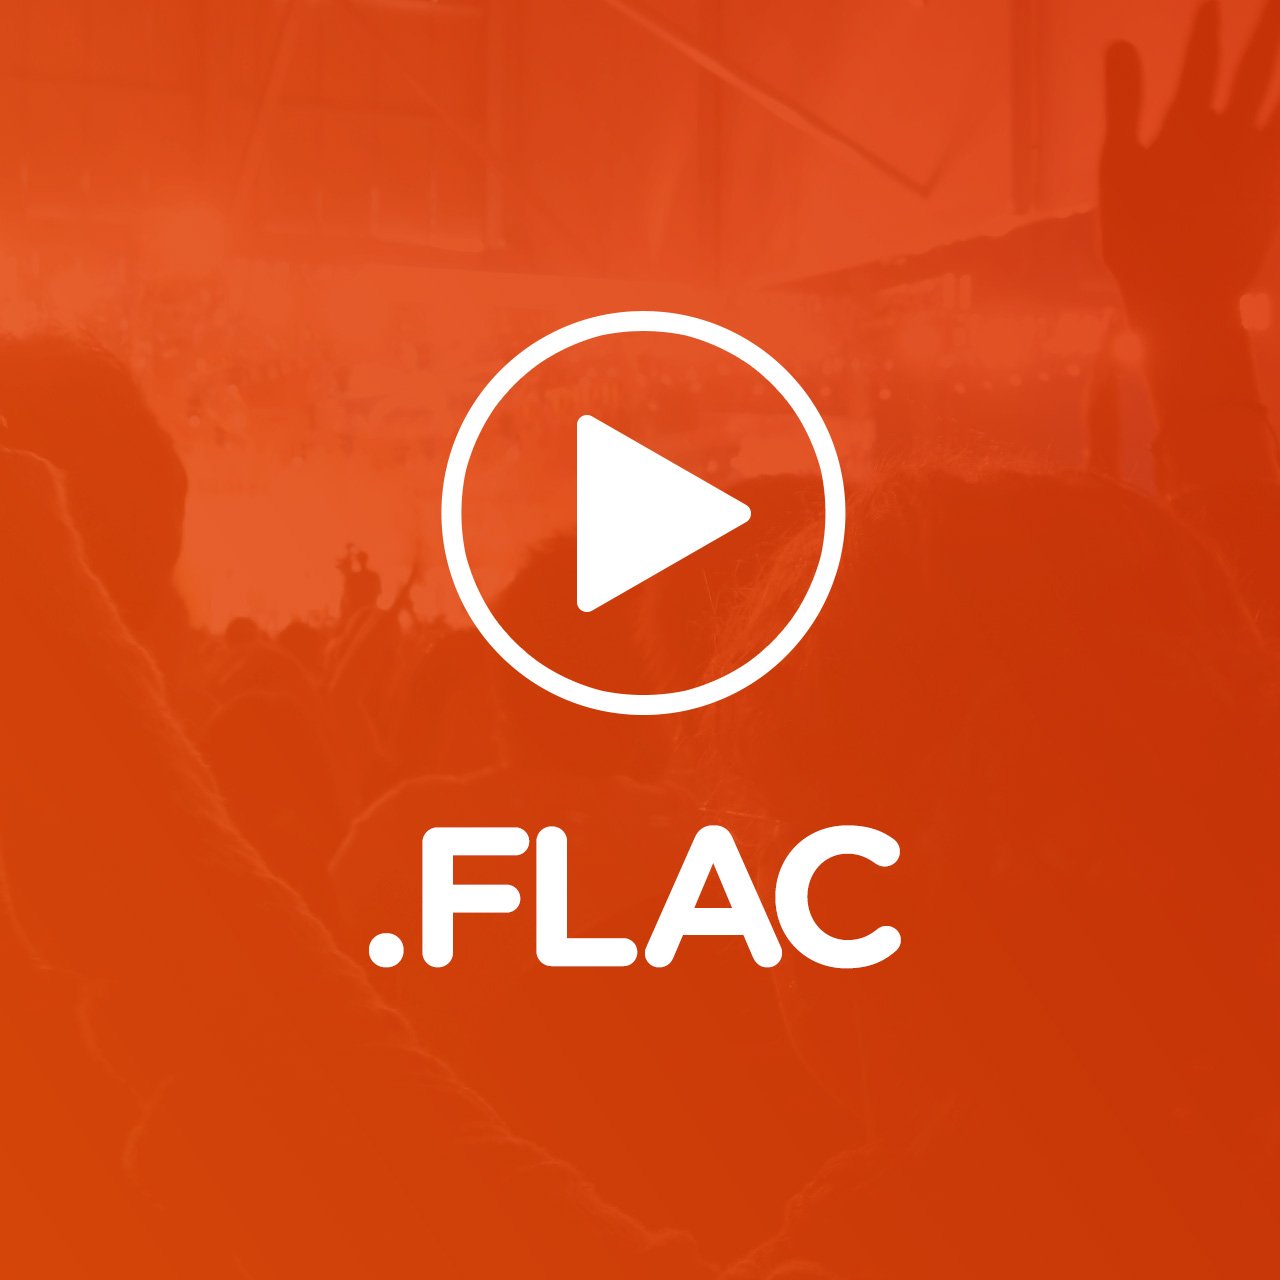 Де і як можна скачати музику в форматі flac?